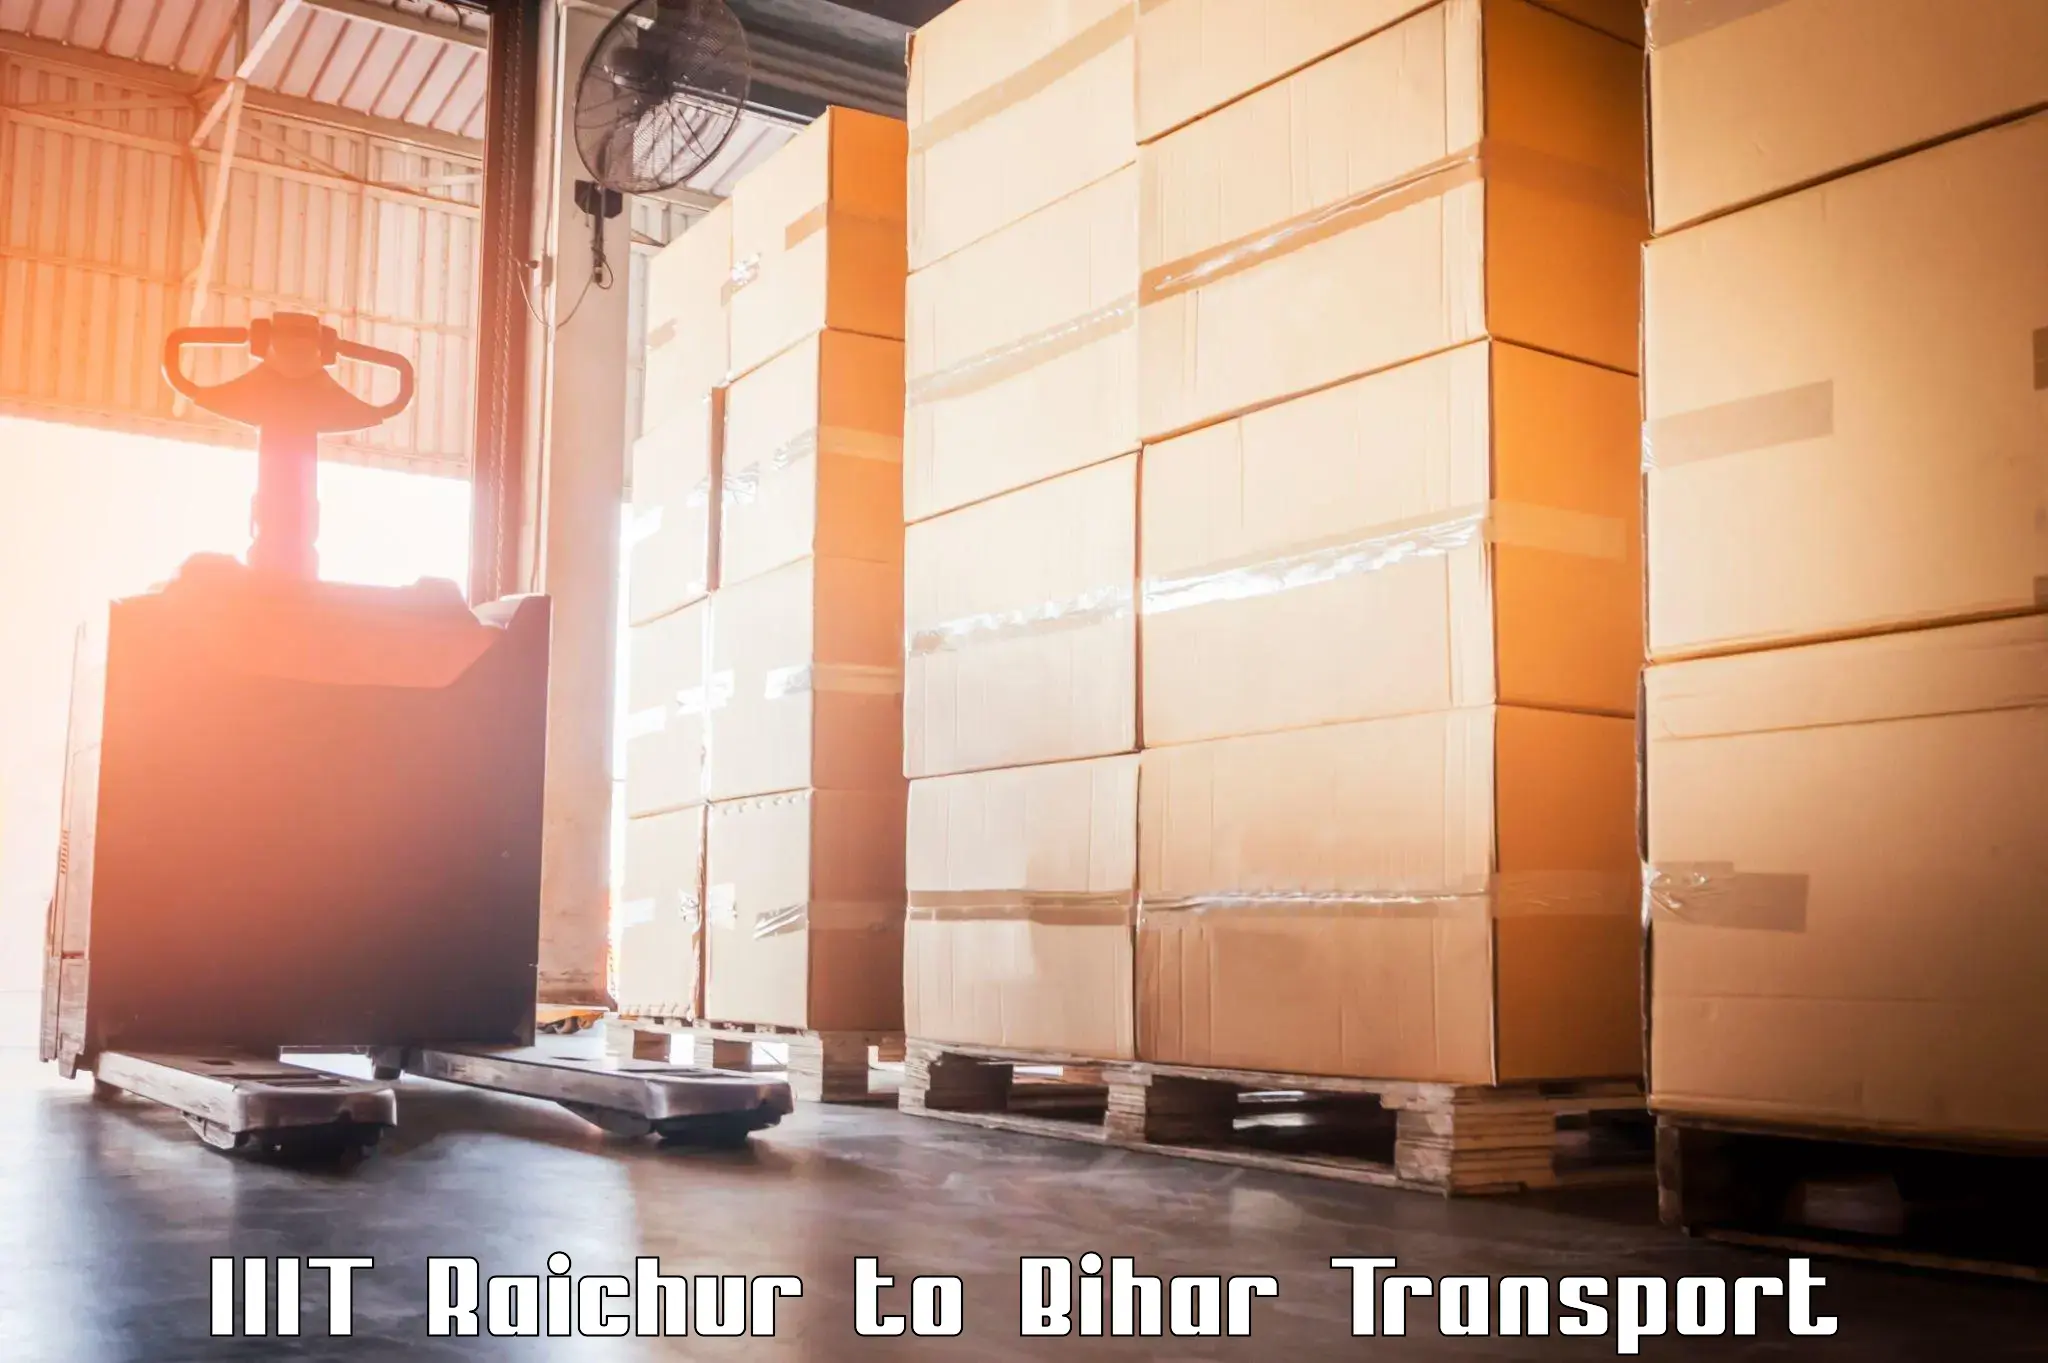 Furniture transport service IIIT Raichur to Runni Saidpur